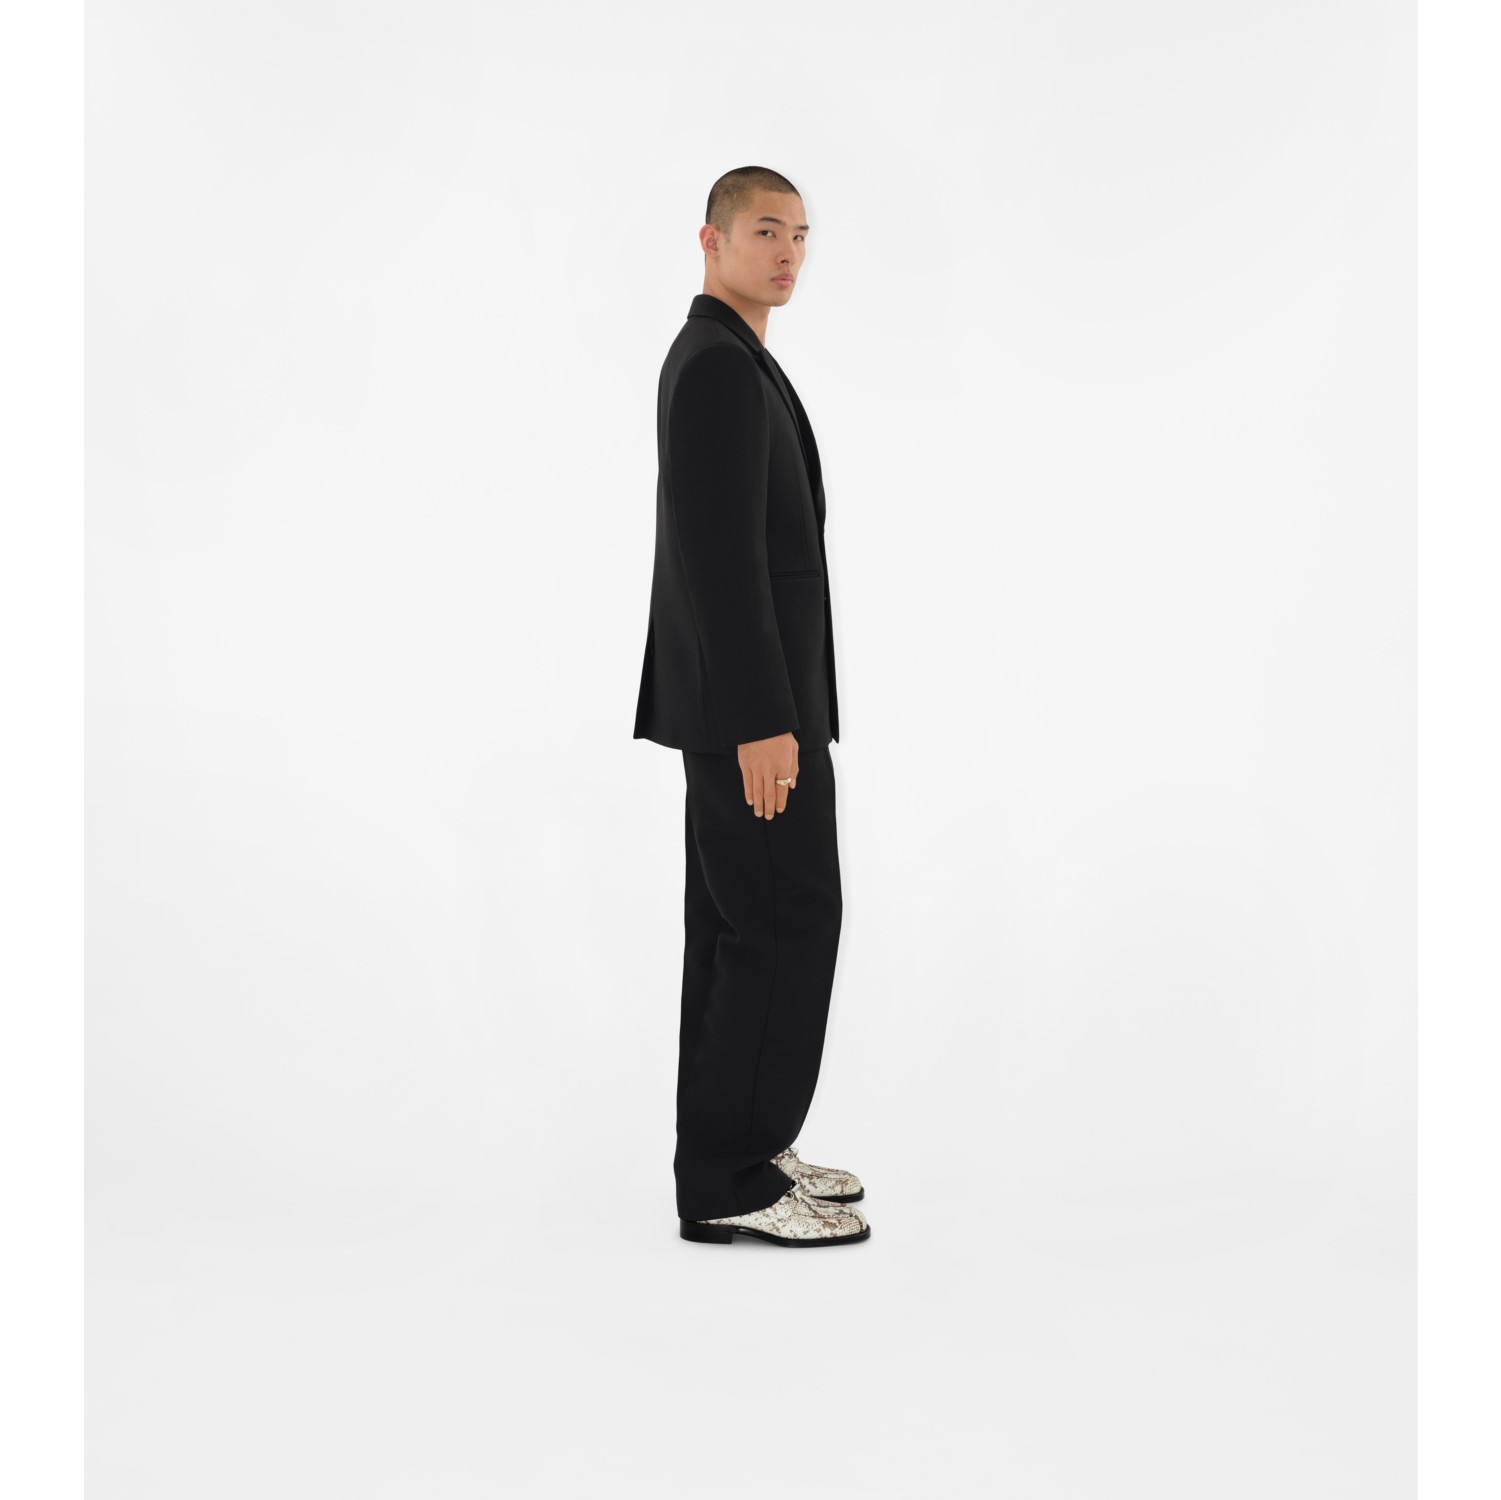 Straight fit wool suit in black wool